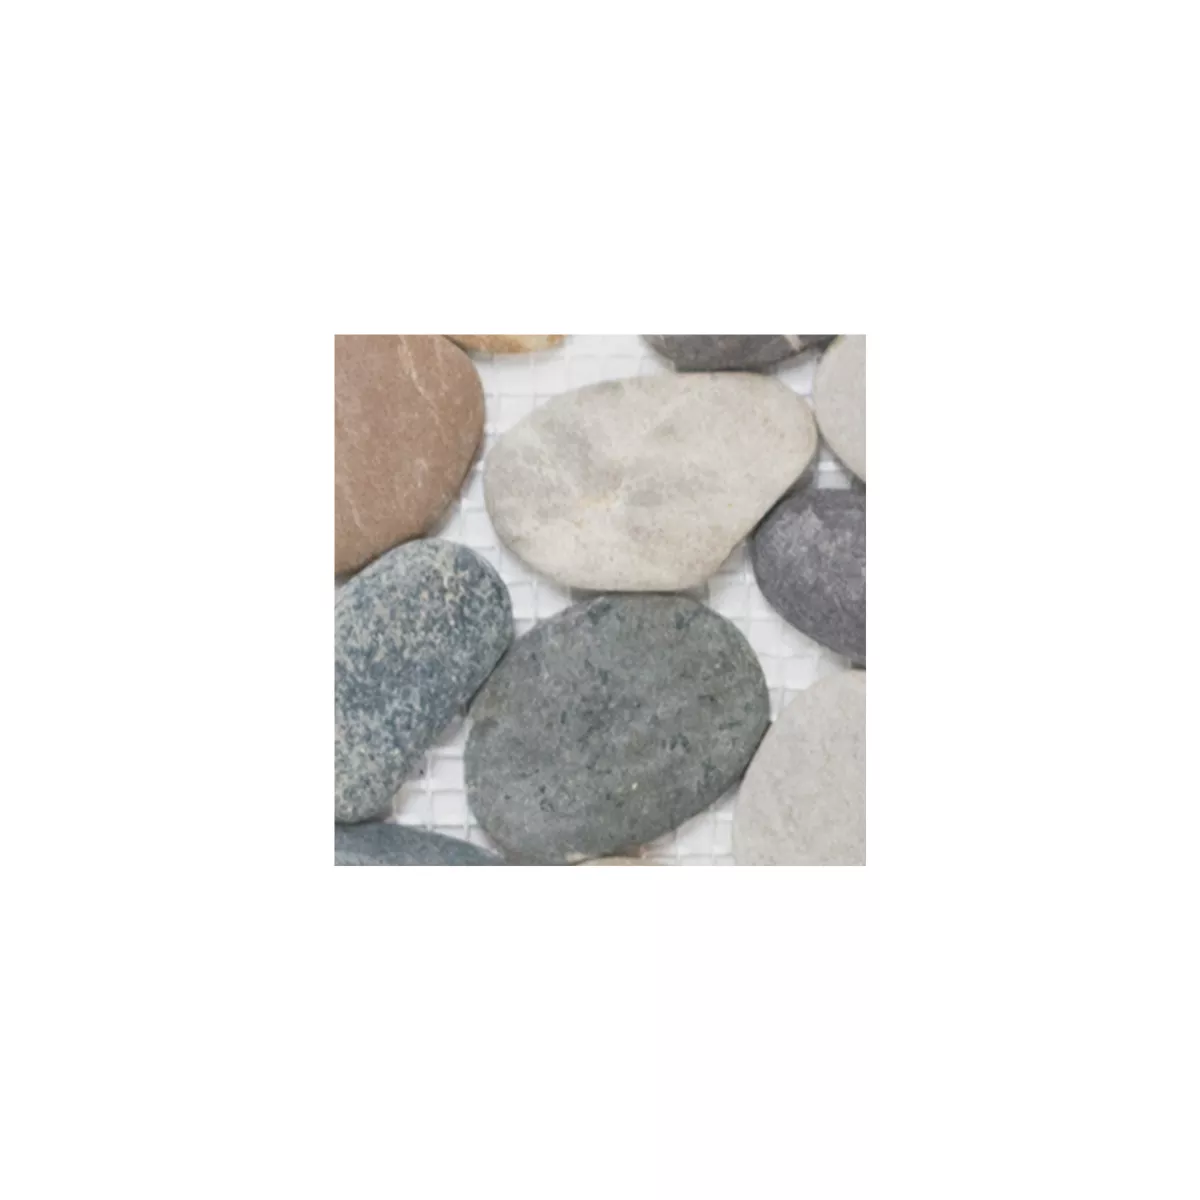 Sample Mosaic Tiles River Pebbles Natural Stone Doha